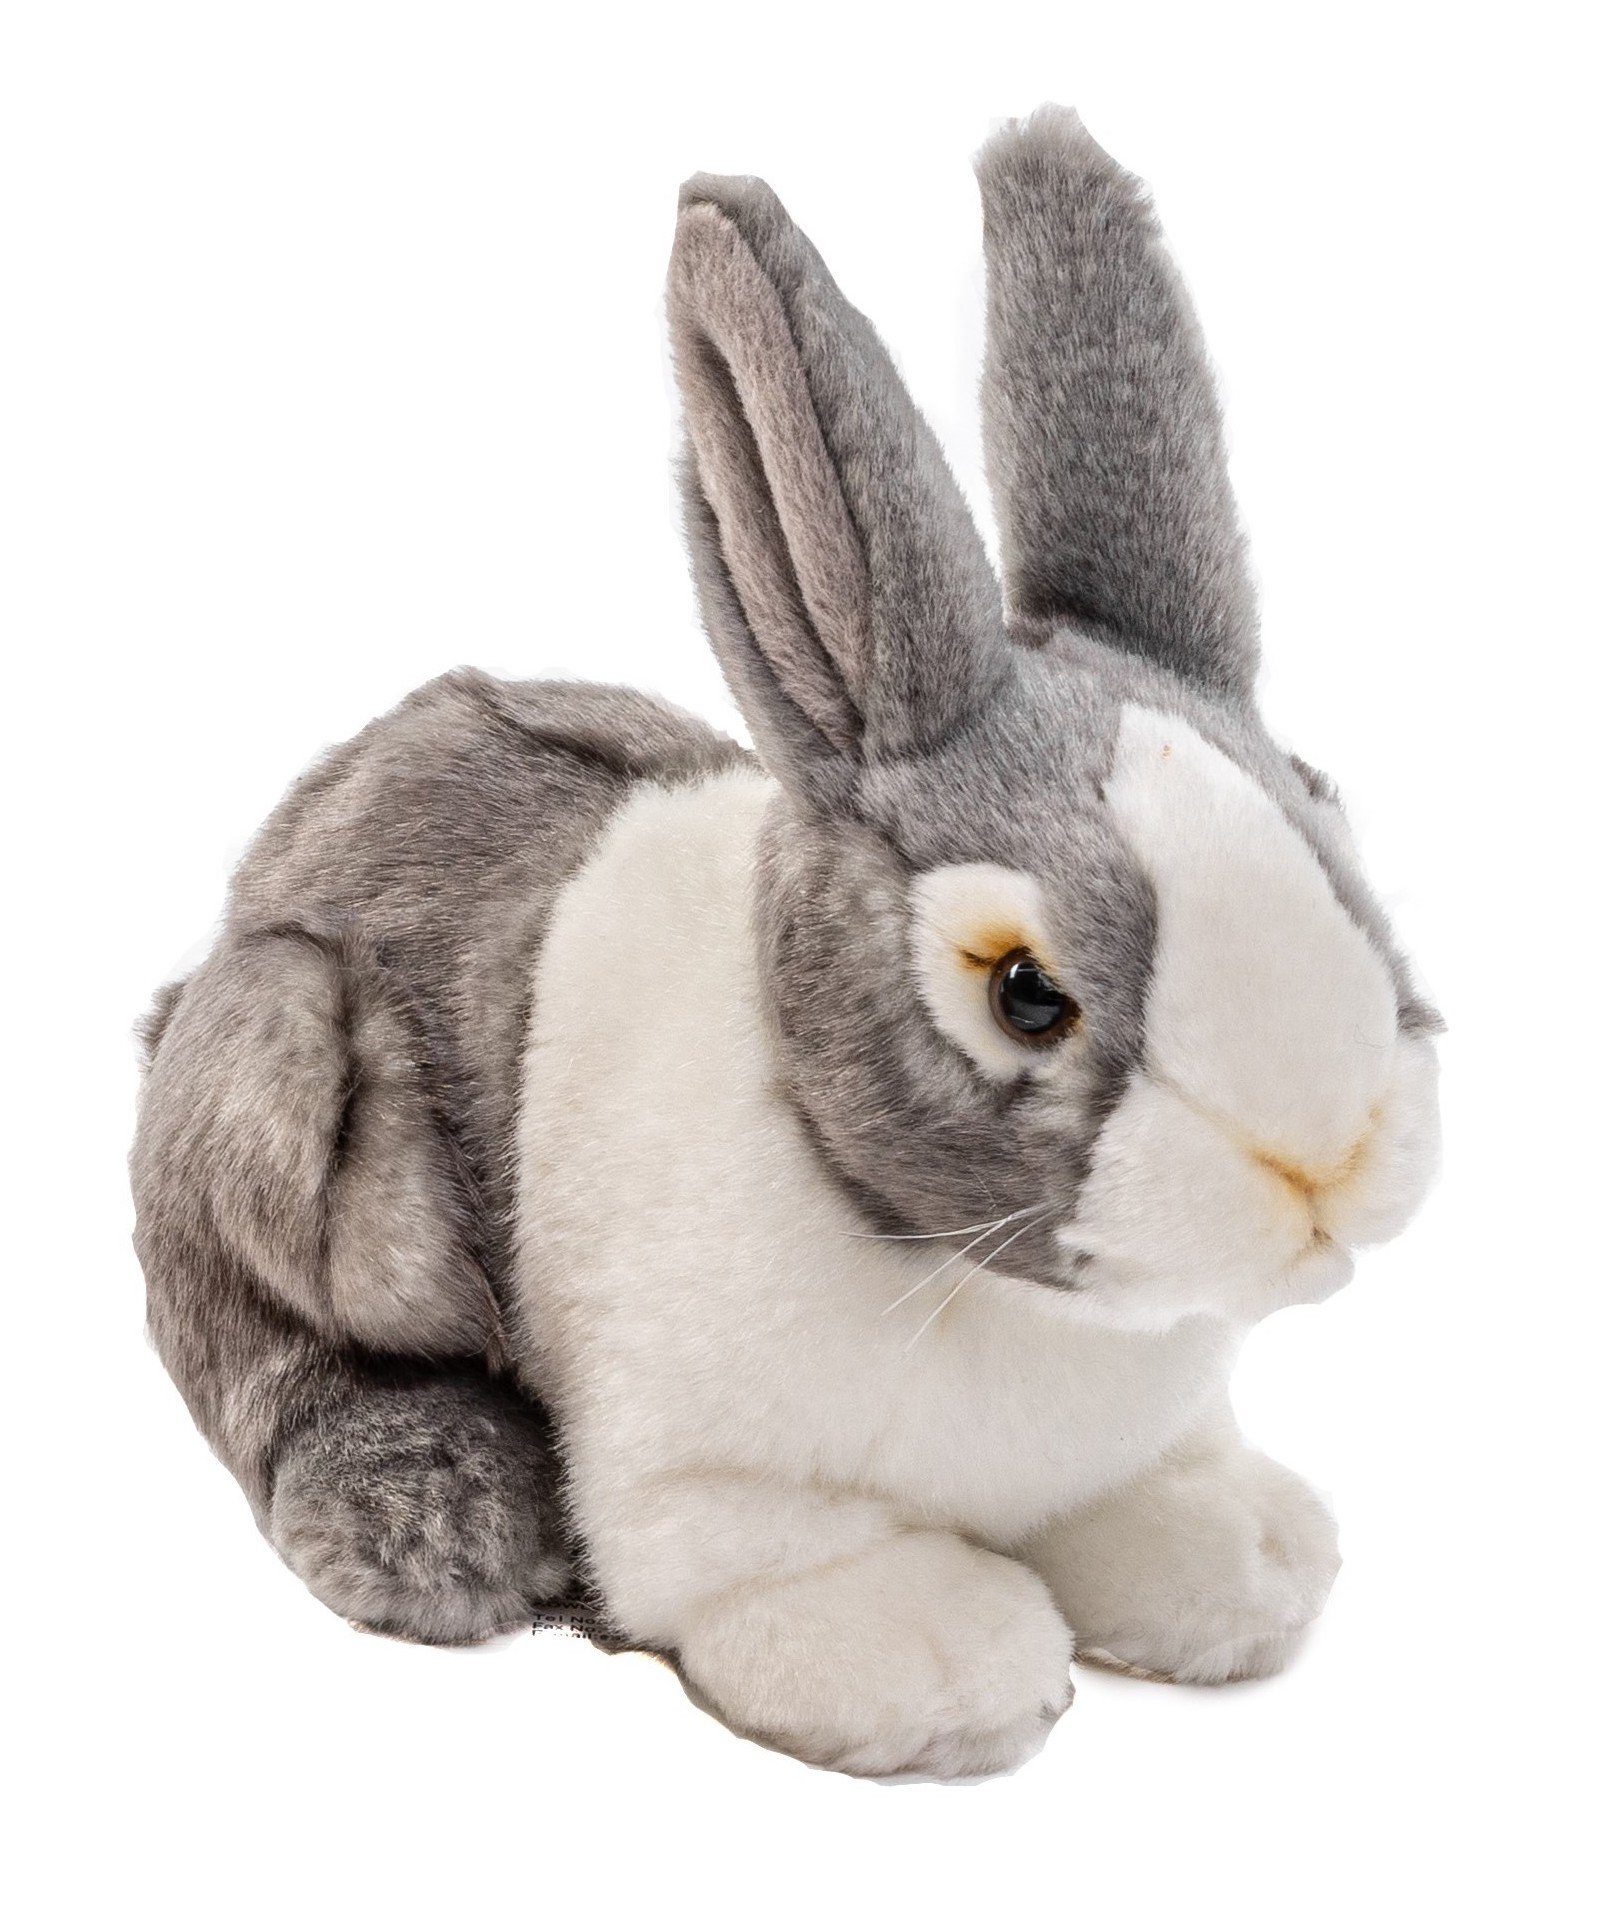 Uni-Toys Kuscheltier Kaninchen, sitzend - grau oder braun - 20 cm - Plüsch-Hase, Plüschtier, zu 100 % recyceltes Füllmaterial grau-weiß